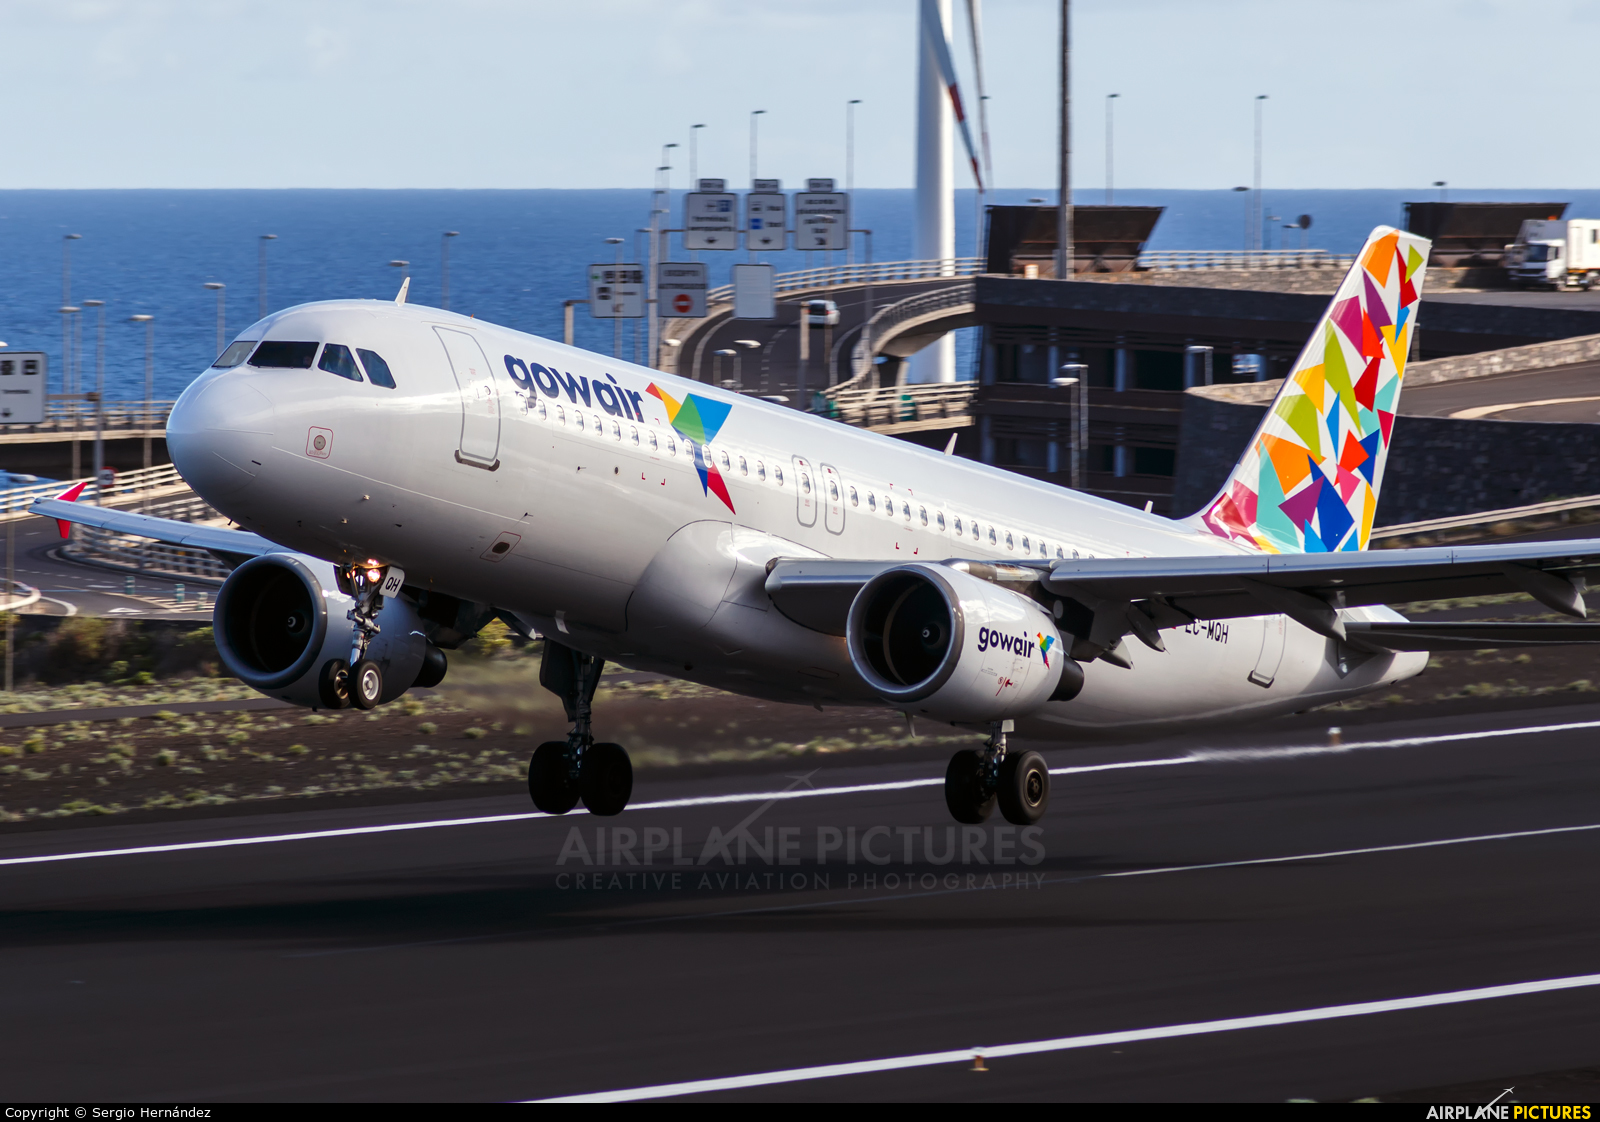 Gowair Airlines EC-MQH aircraft at Santa Cruz de La Palma